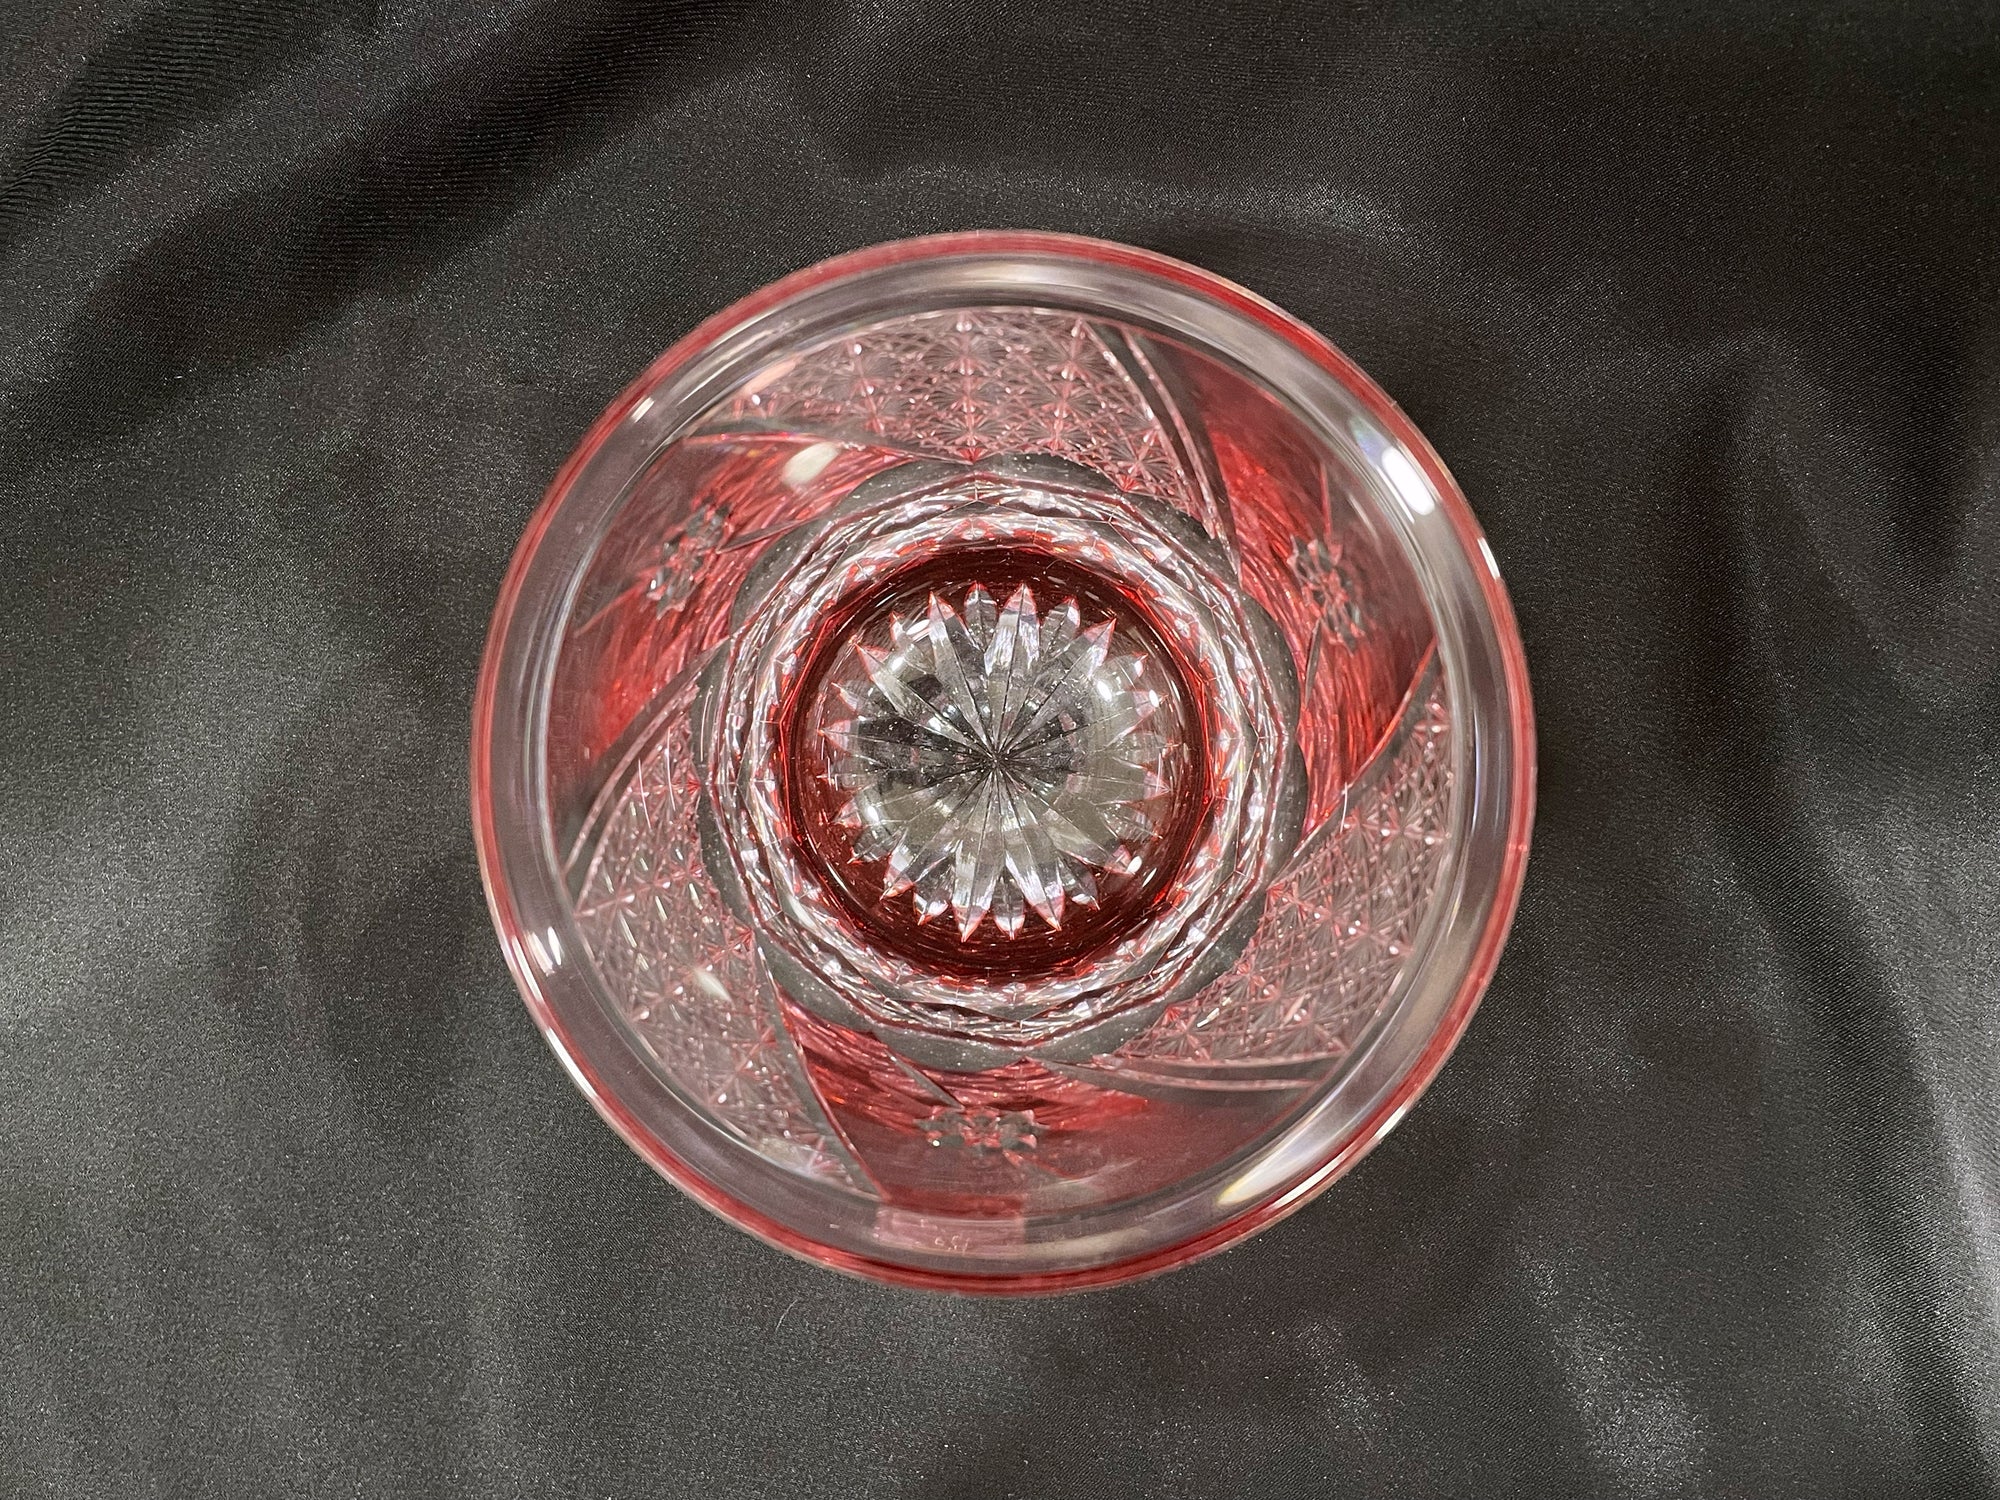 Kagami Pair Whisky Glass by Hideaki Shinozaki - Chrysanthemum mesh and Flowers